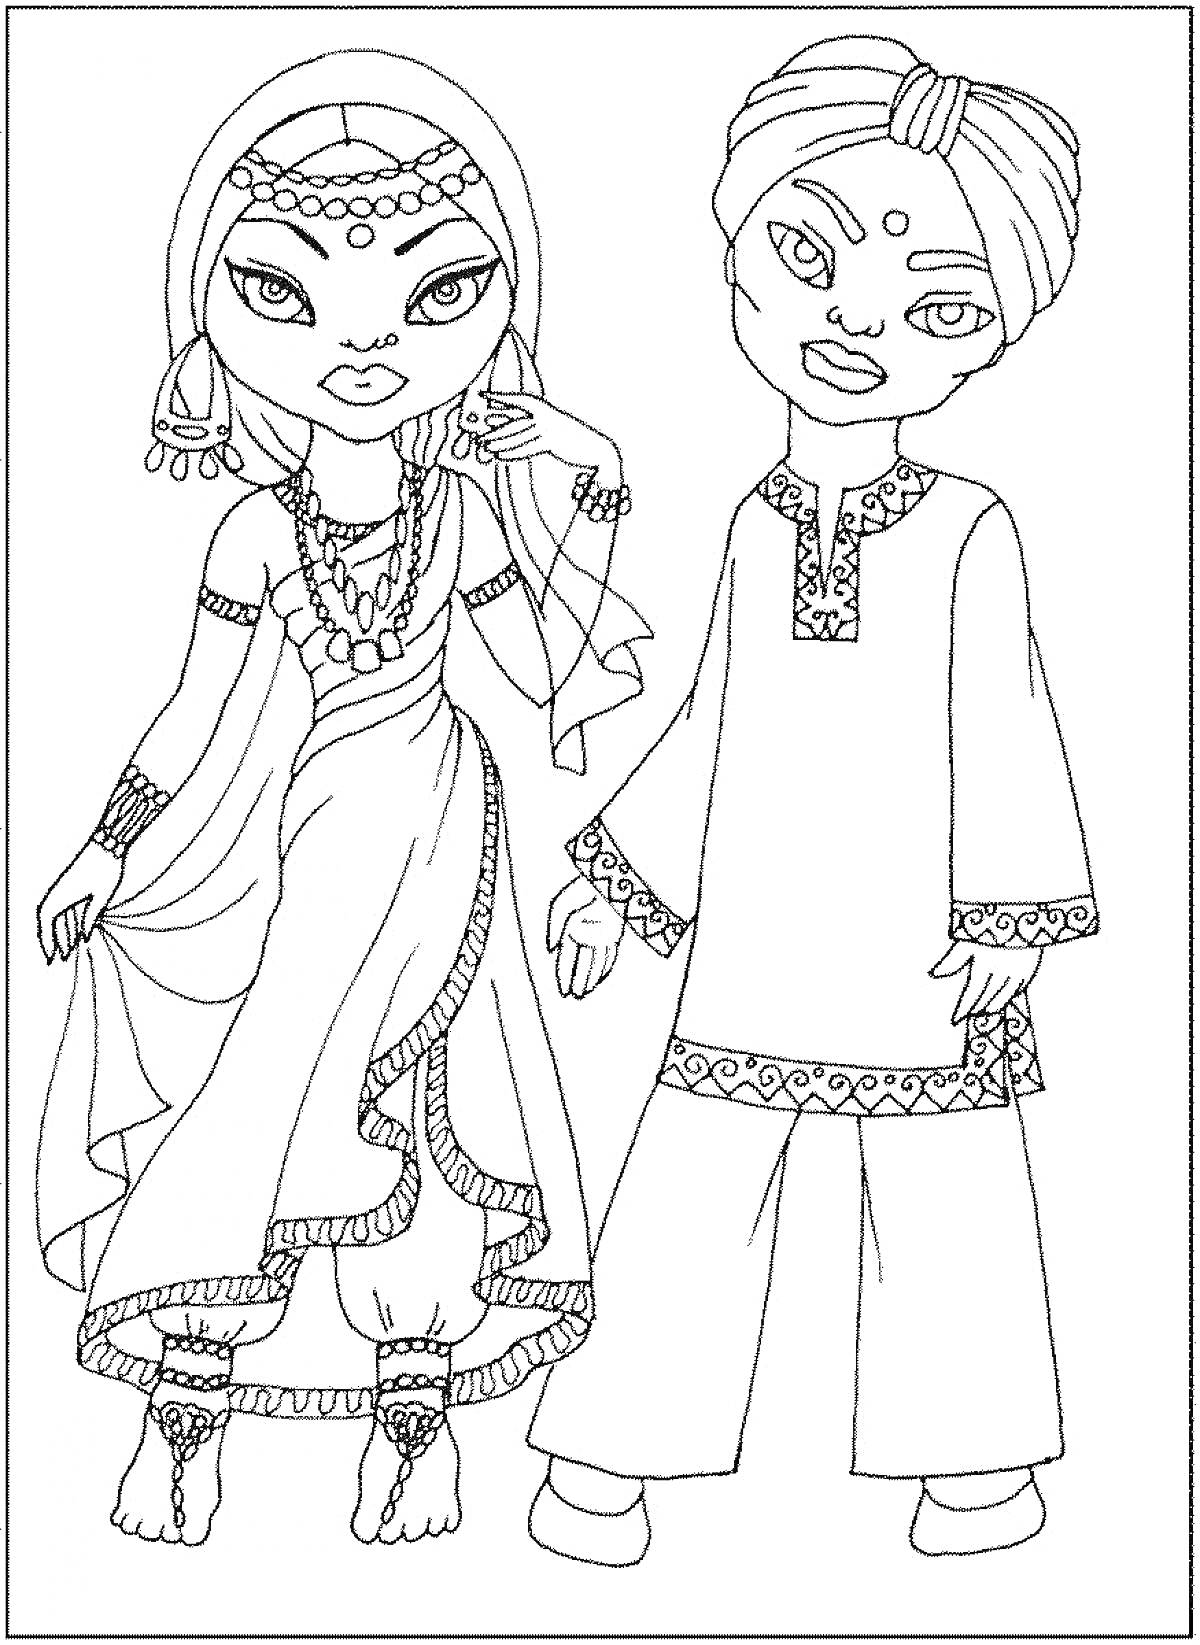 Раскраска Дети в традиционных индийских костюмах: девочка в сари и мальчик в курте с тюрбаном.